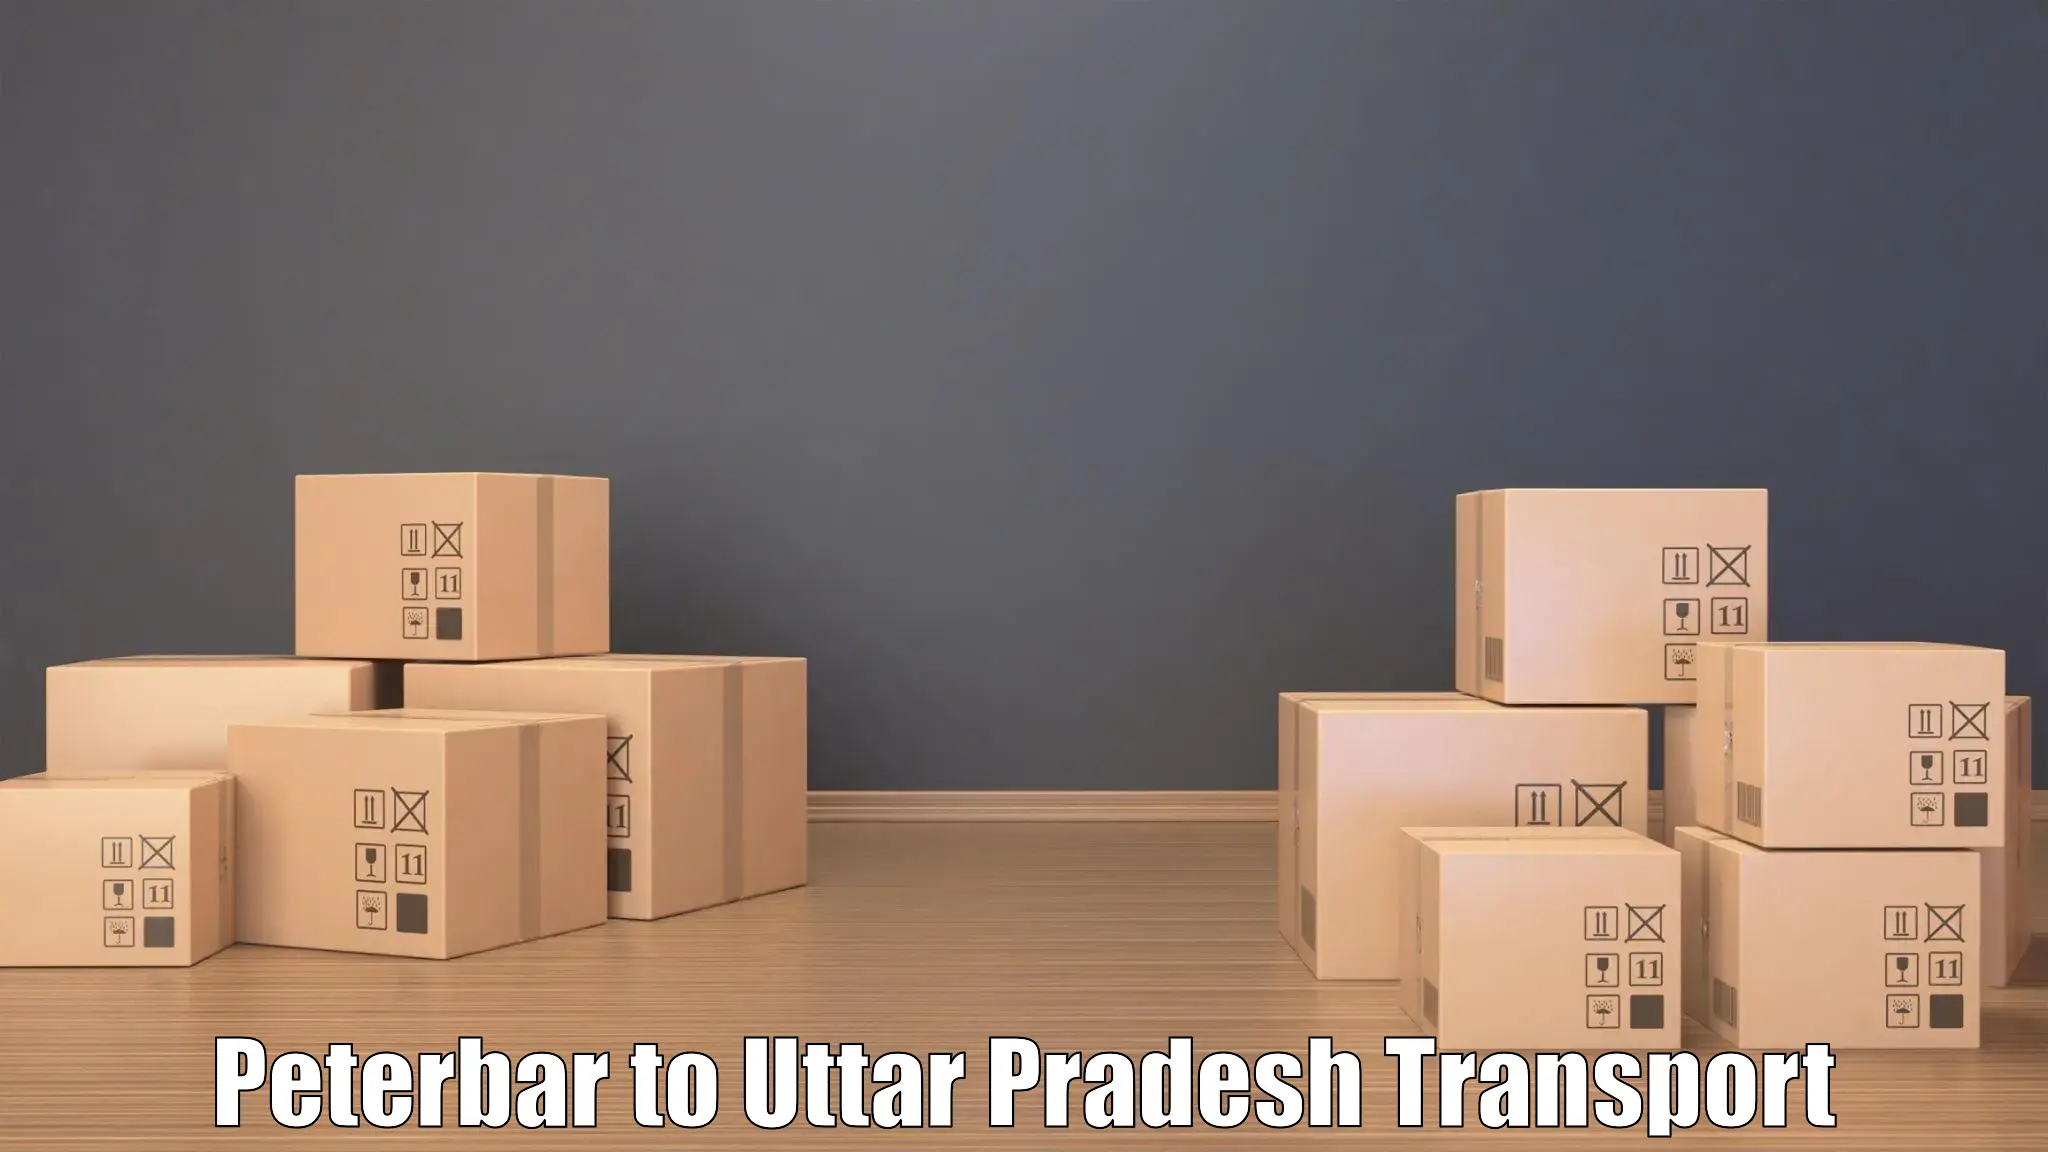 Express transport services Peterbar to Banaras Hindu University Varanasi